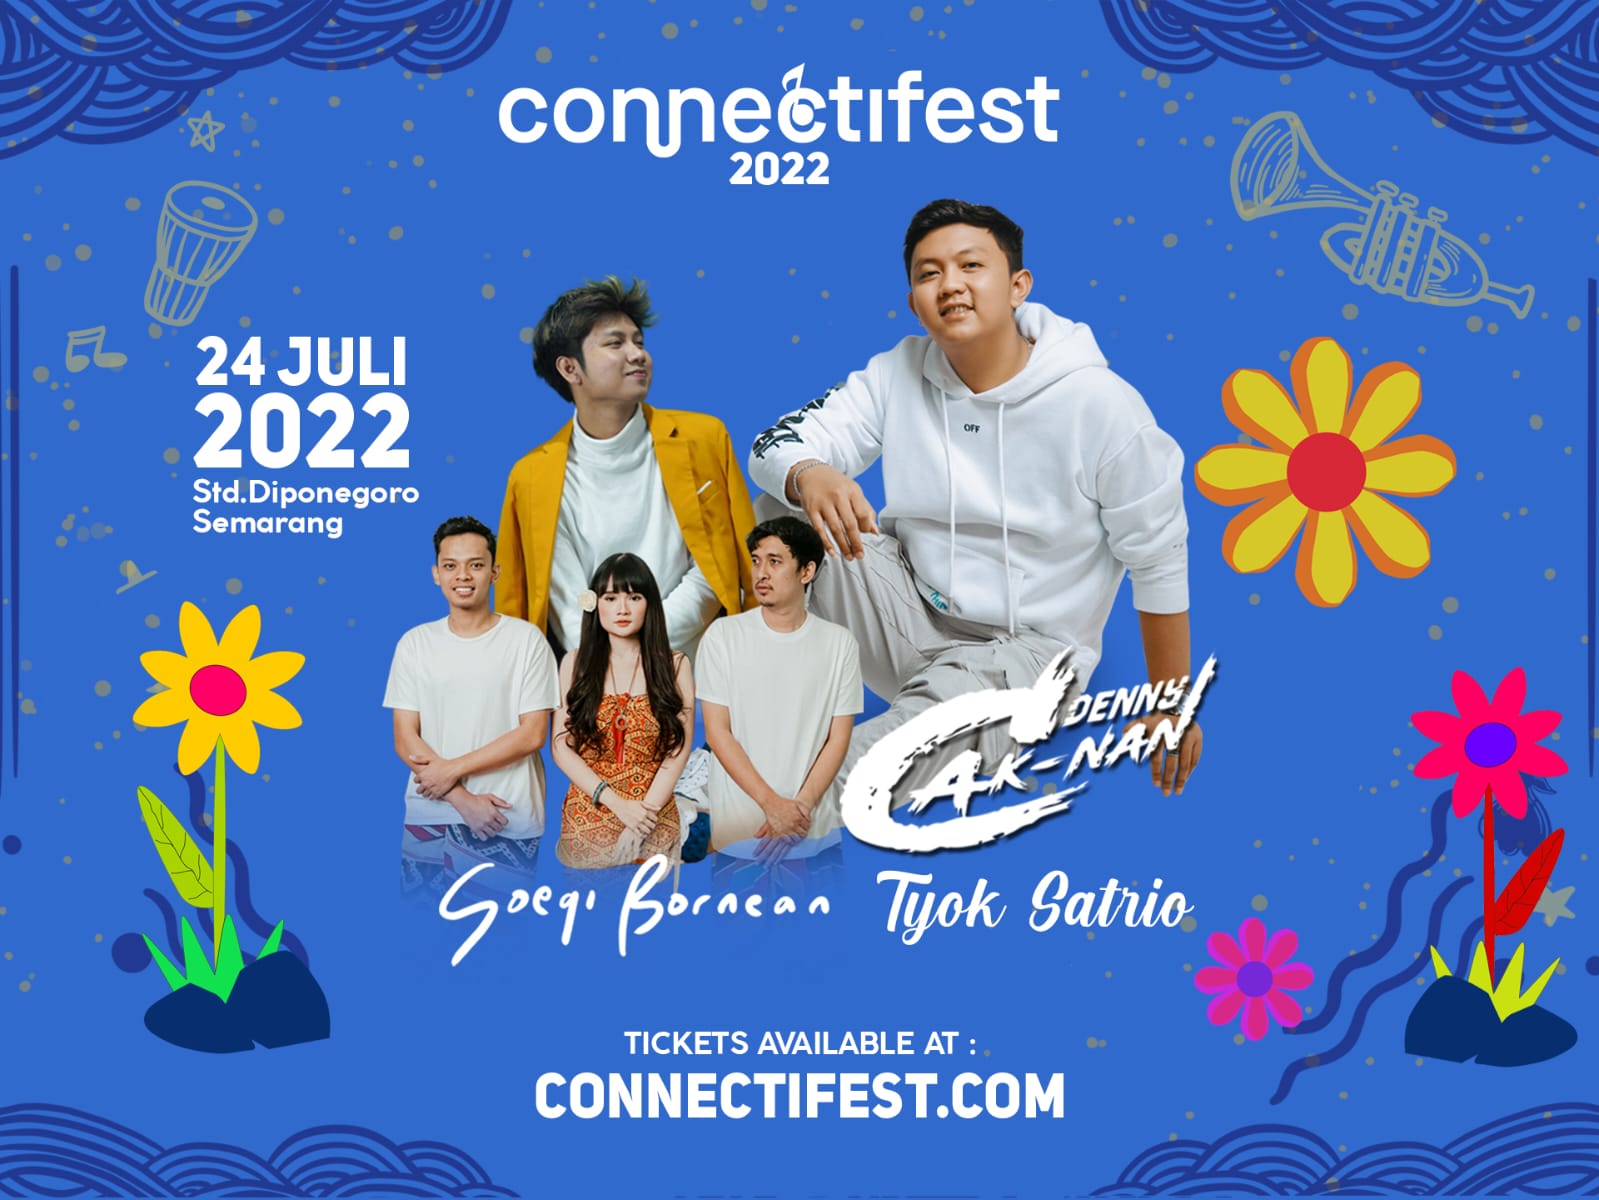 Denny Caknan Akan Hadir di Semarang 24 Juli 2022, Dalam Festival Musik Connectifest